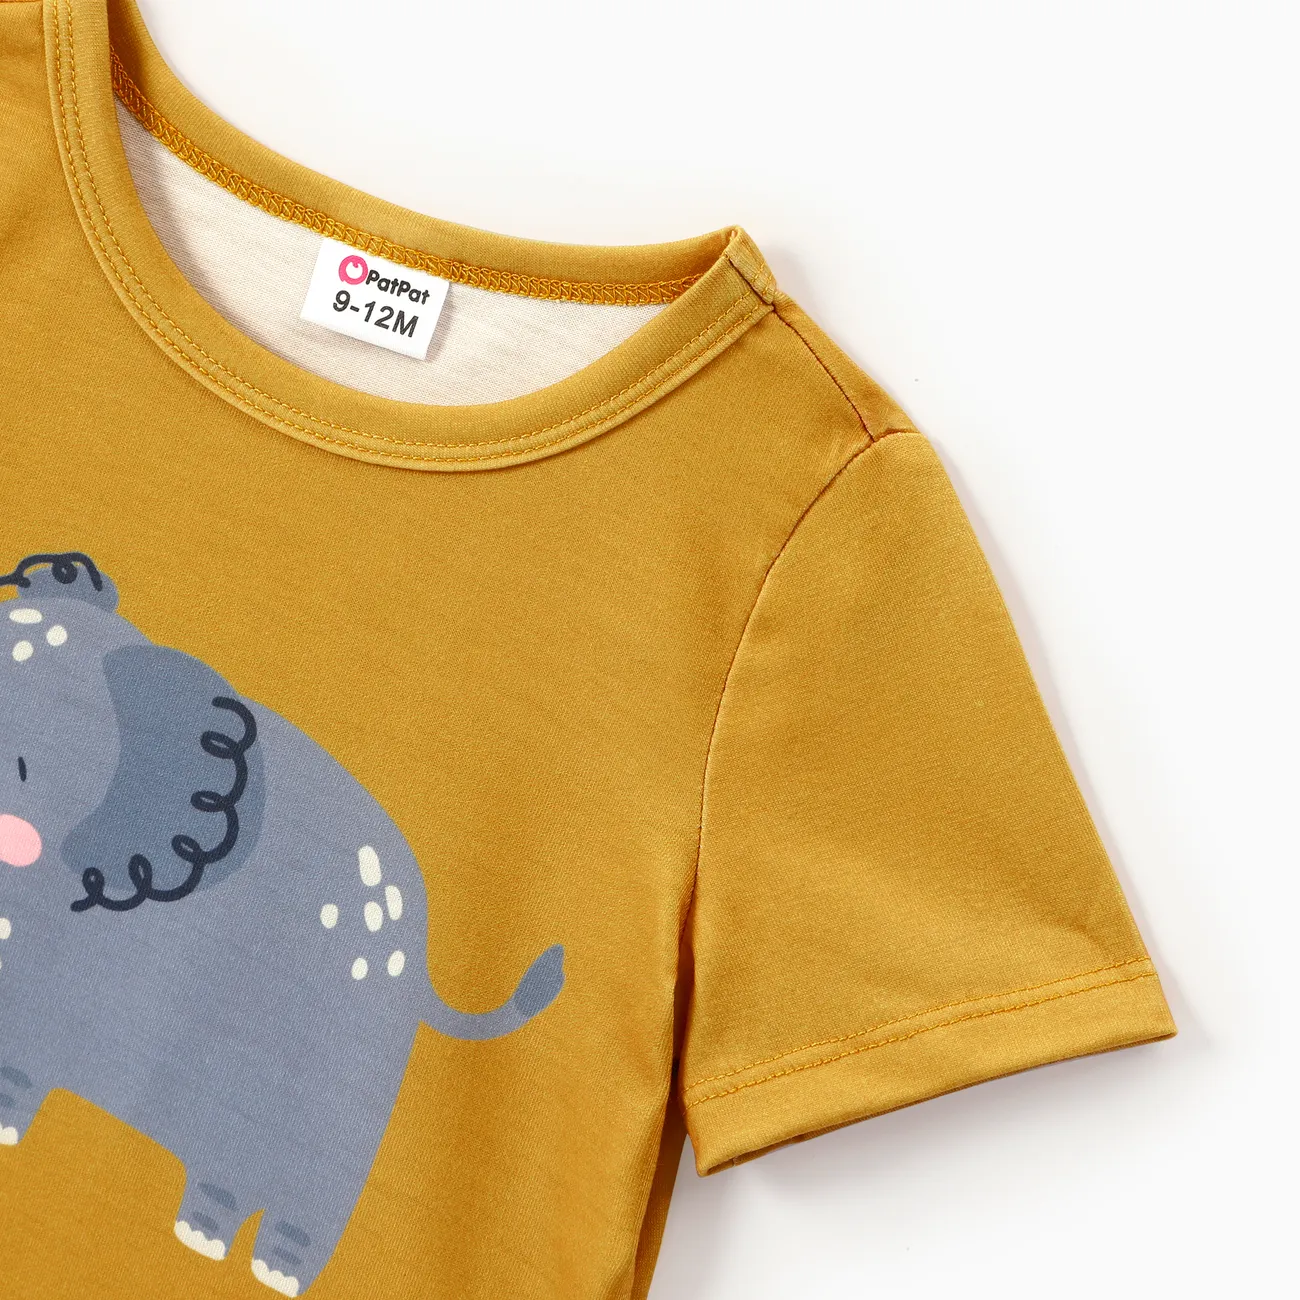 Baby Boy Childlike Animal Print Short Sleeve Tee  Yellow big image 1